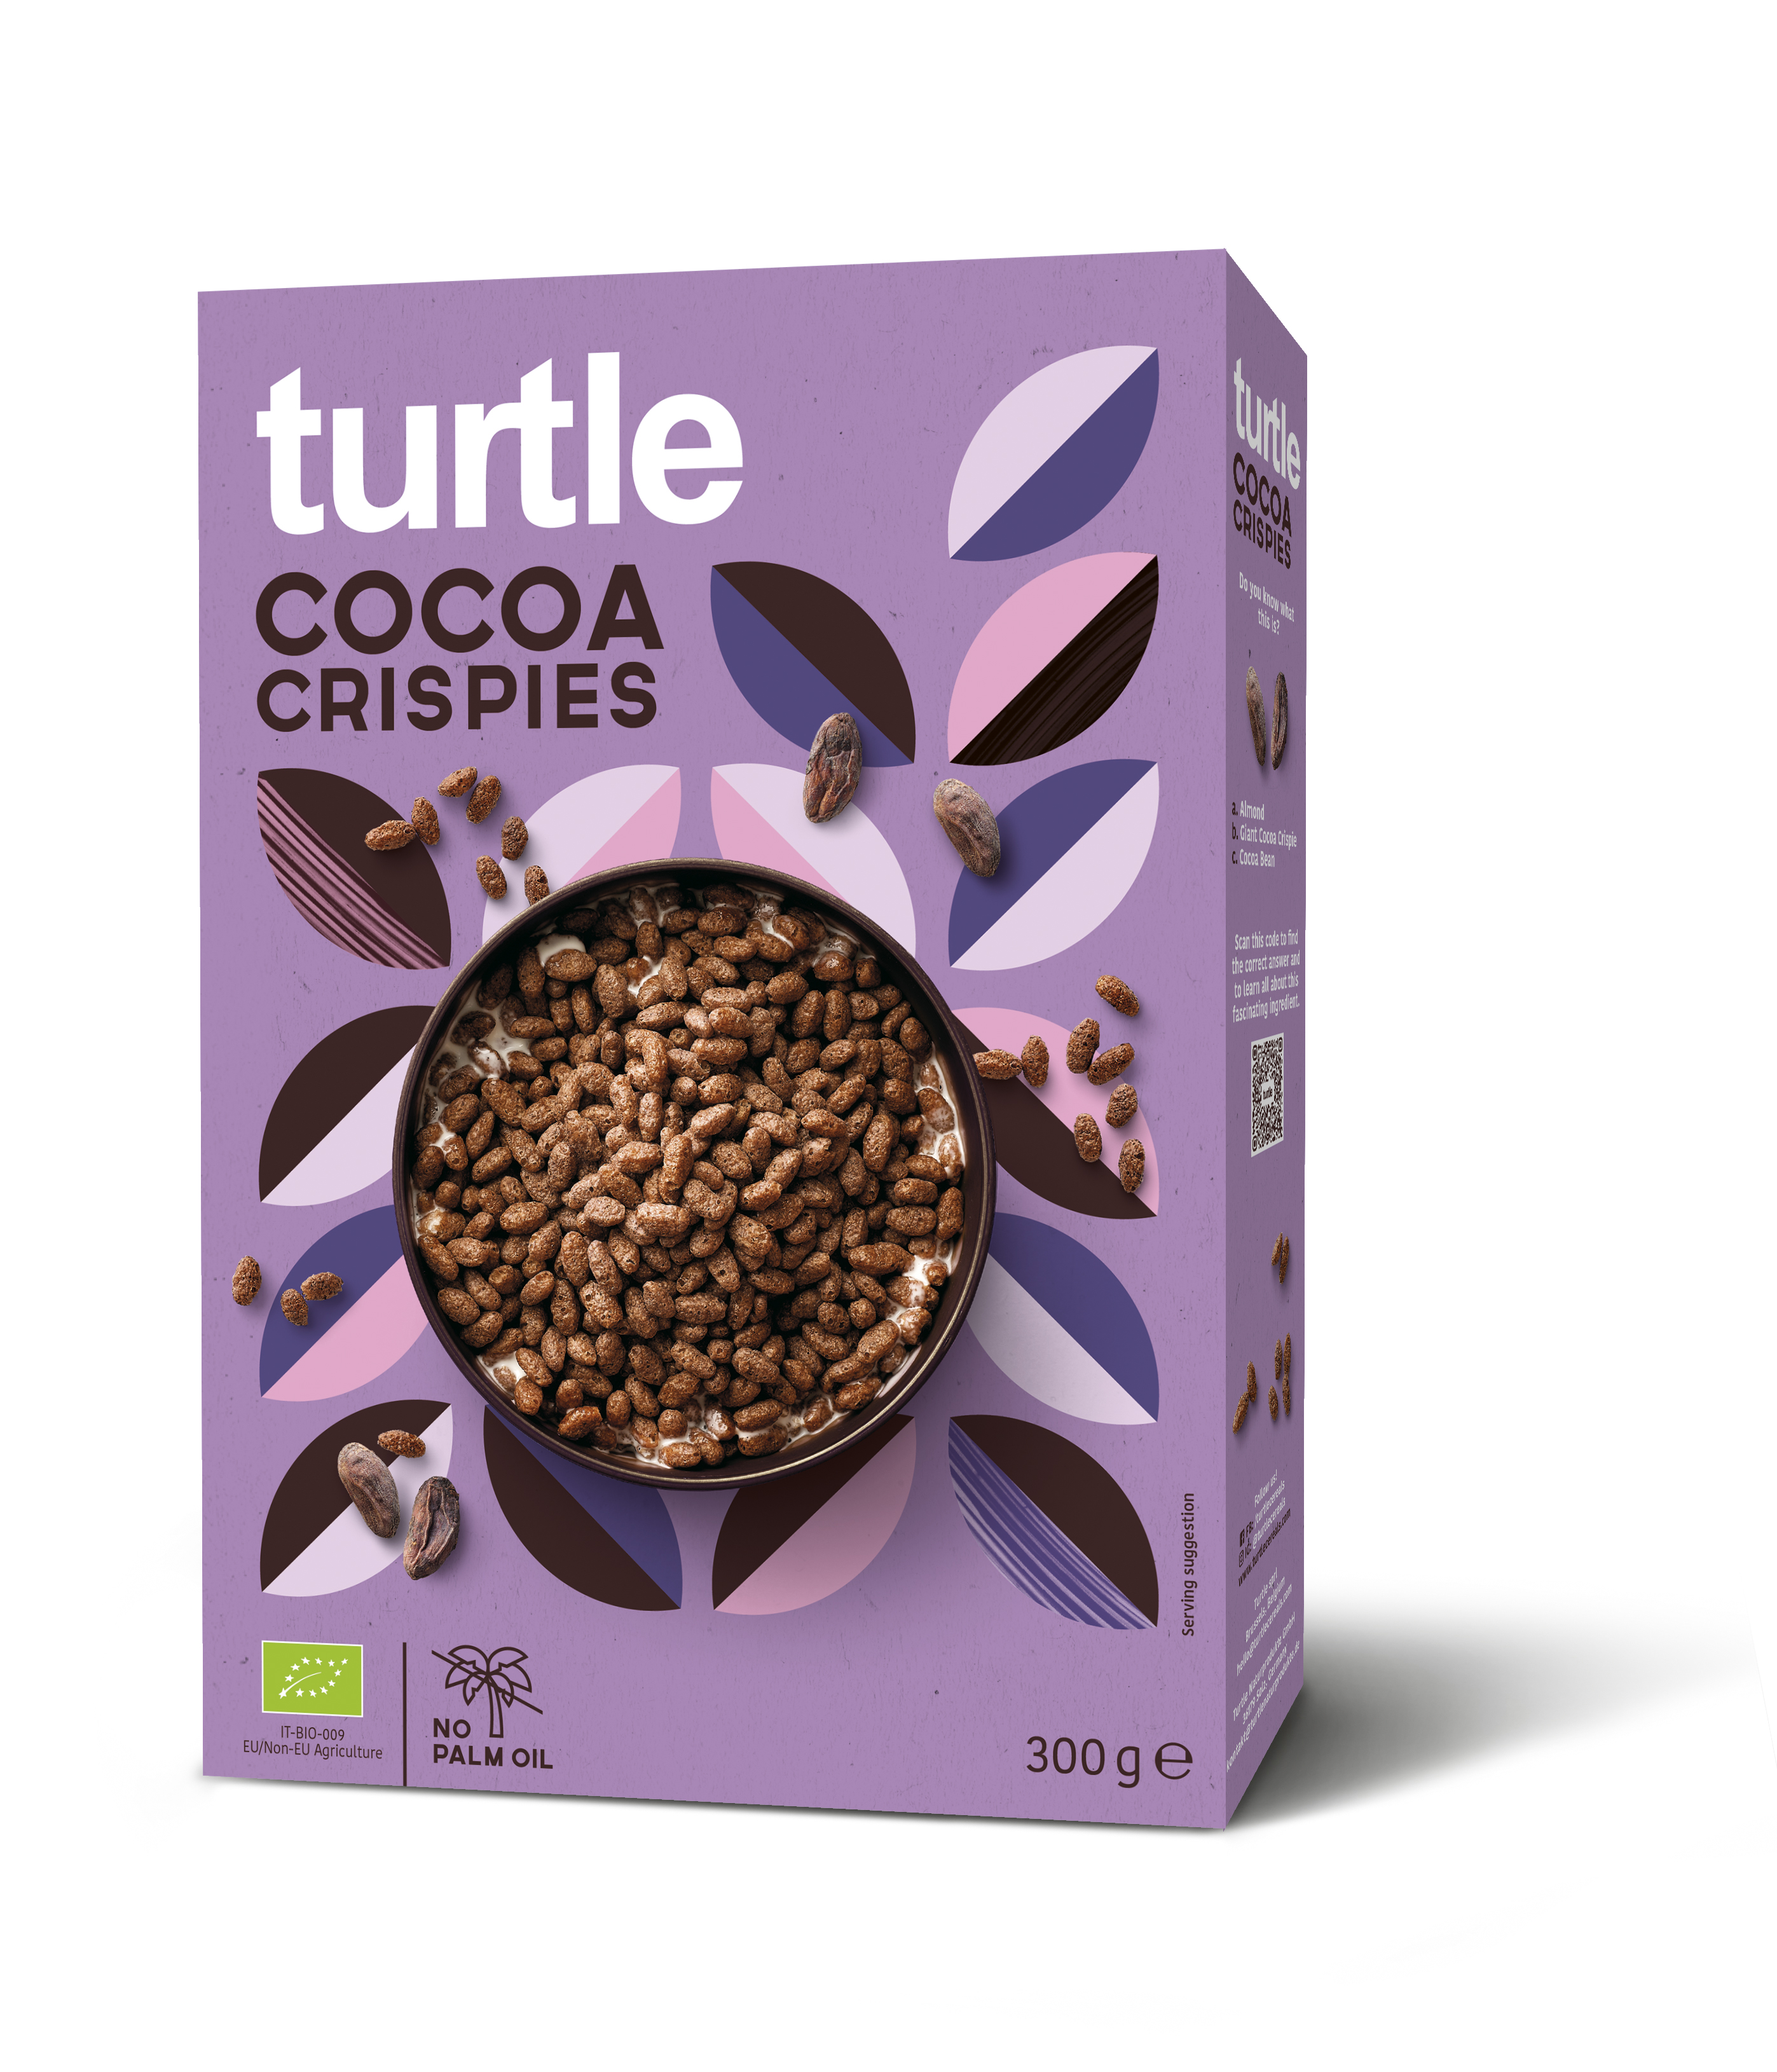 Cereale eco de orez crocante cu cacao, 300g, Turtle